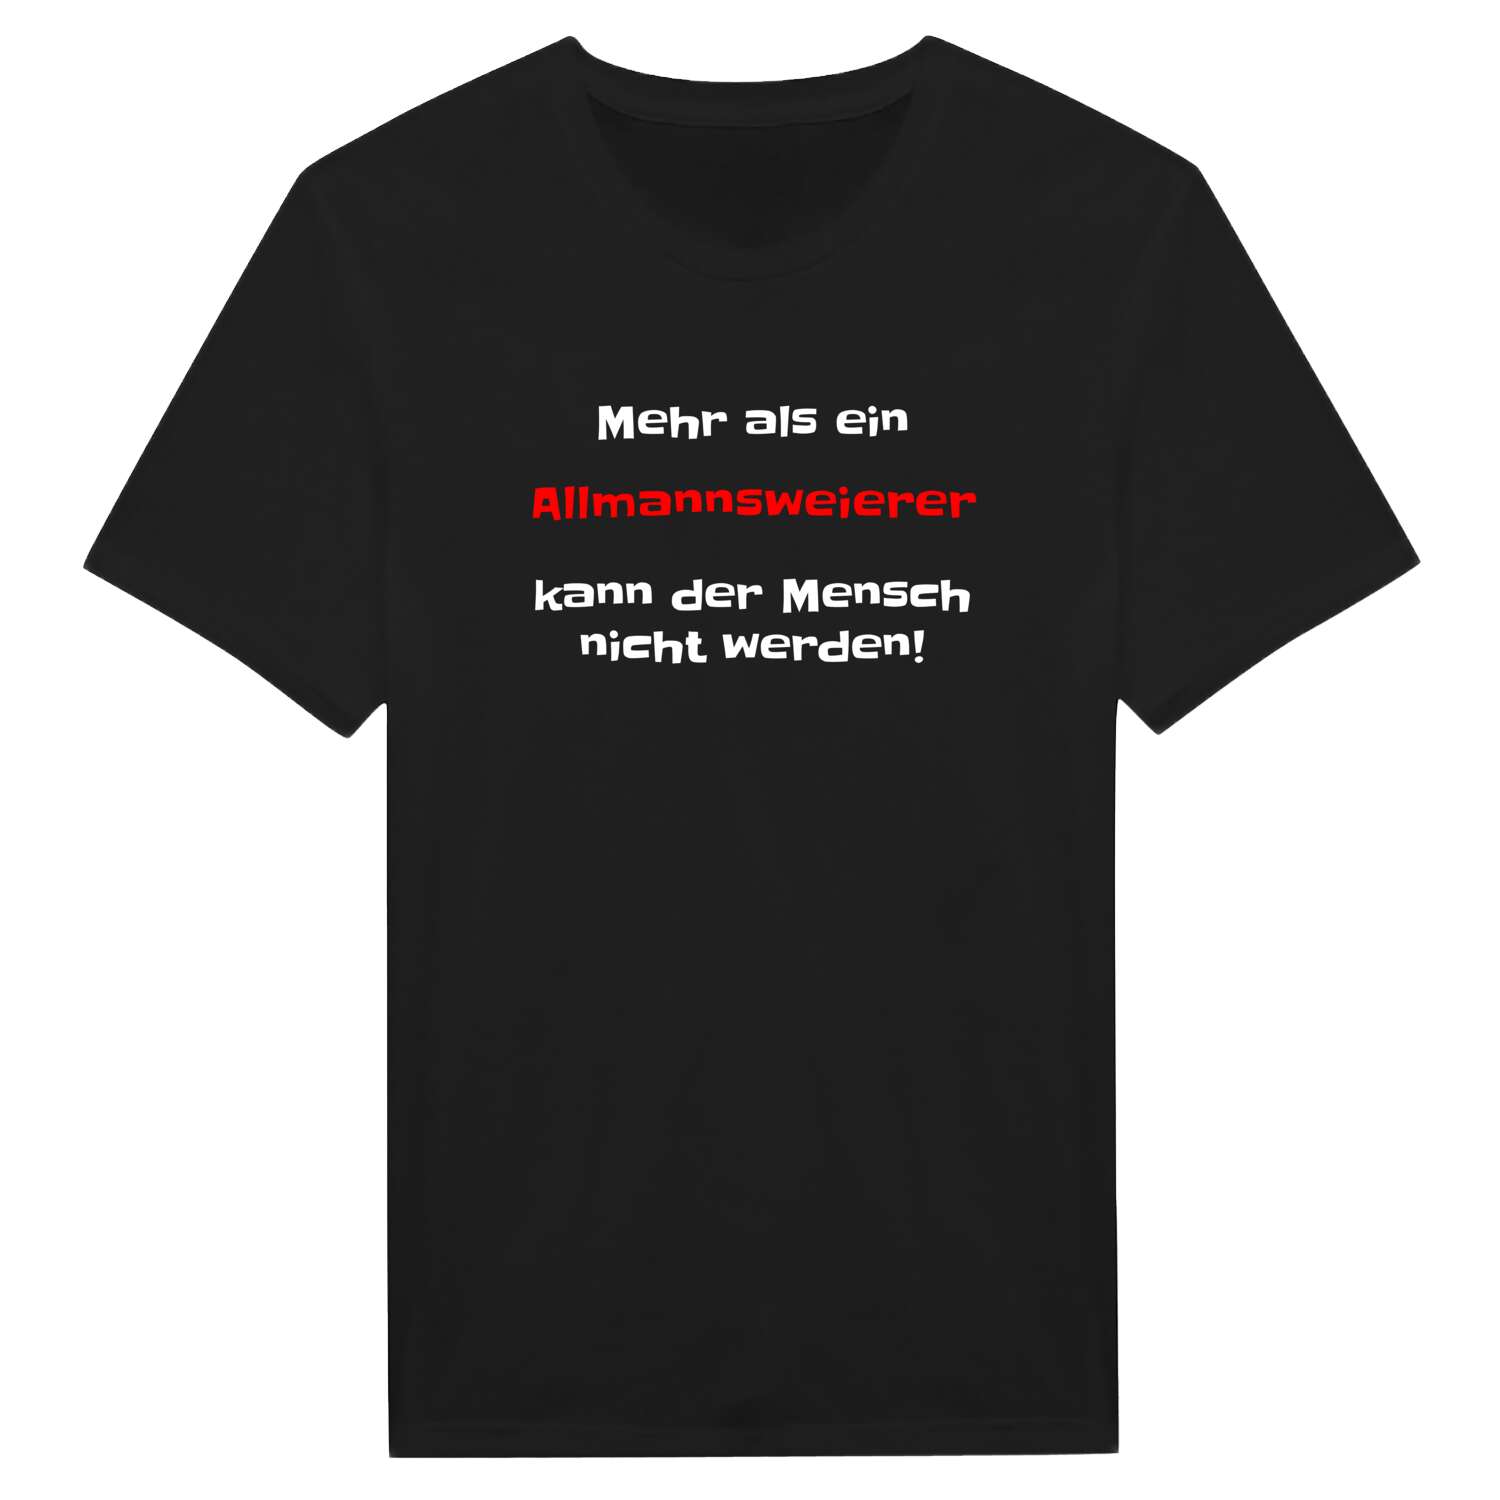 Allmannsweier T-Shirt »Mehr als ein«